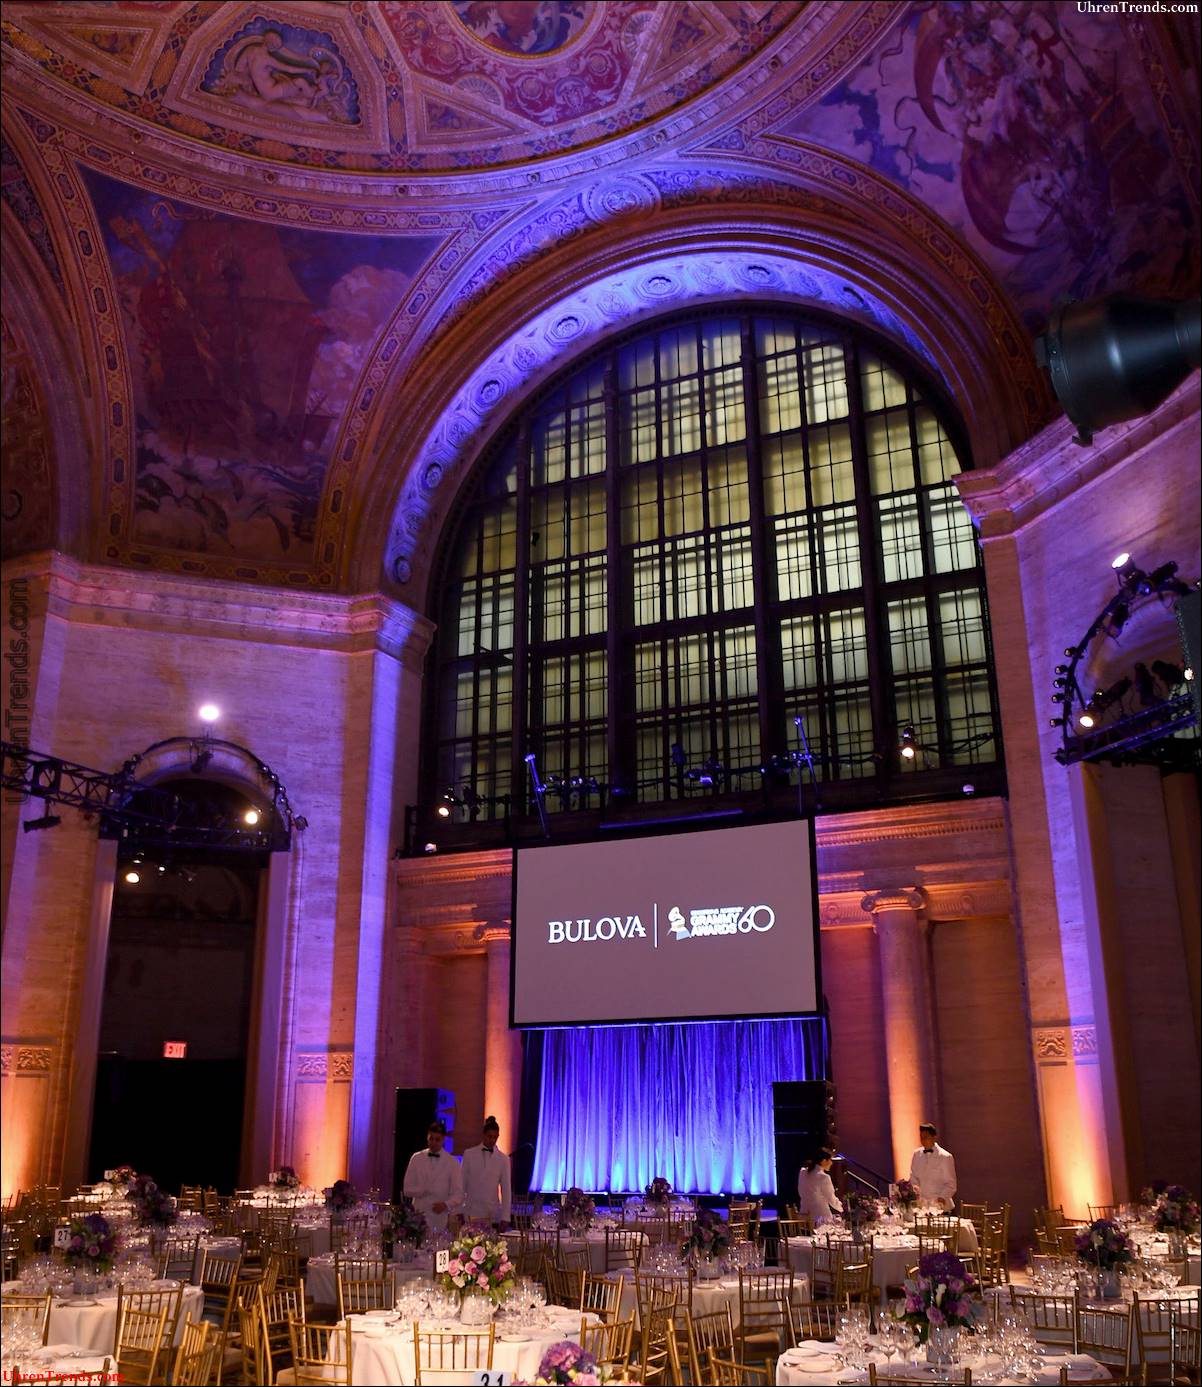 Bulova feiert den 60. Geburtstag der Grammy Awards mit limitierter Edition in New York City  